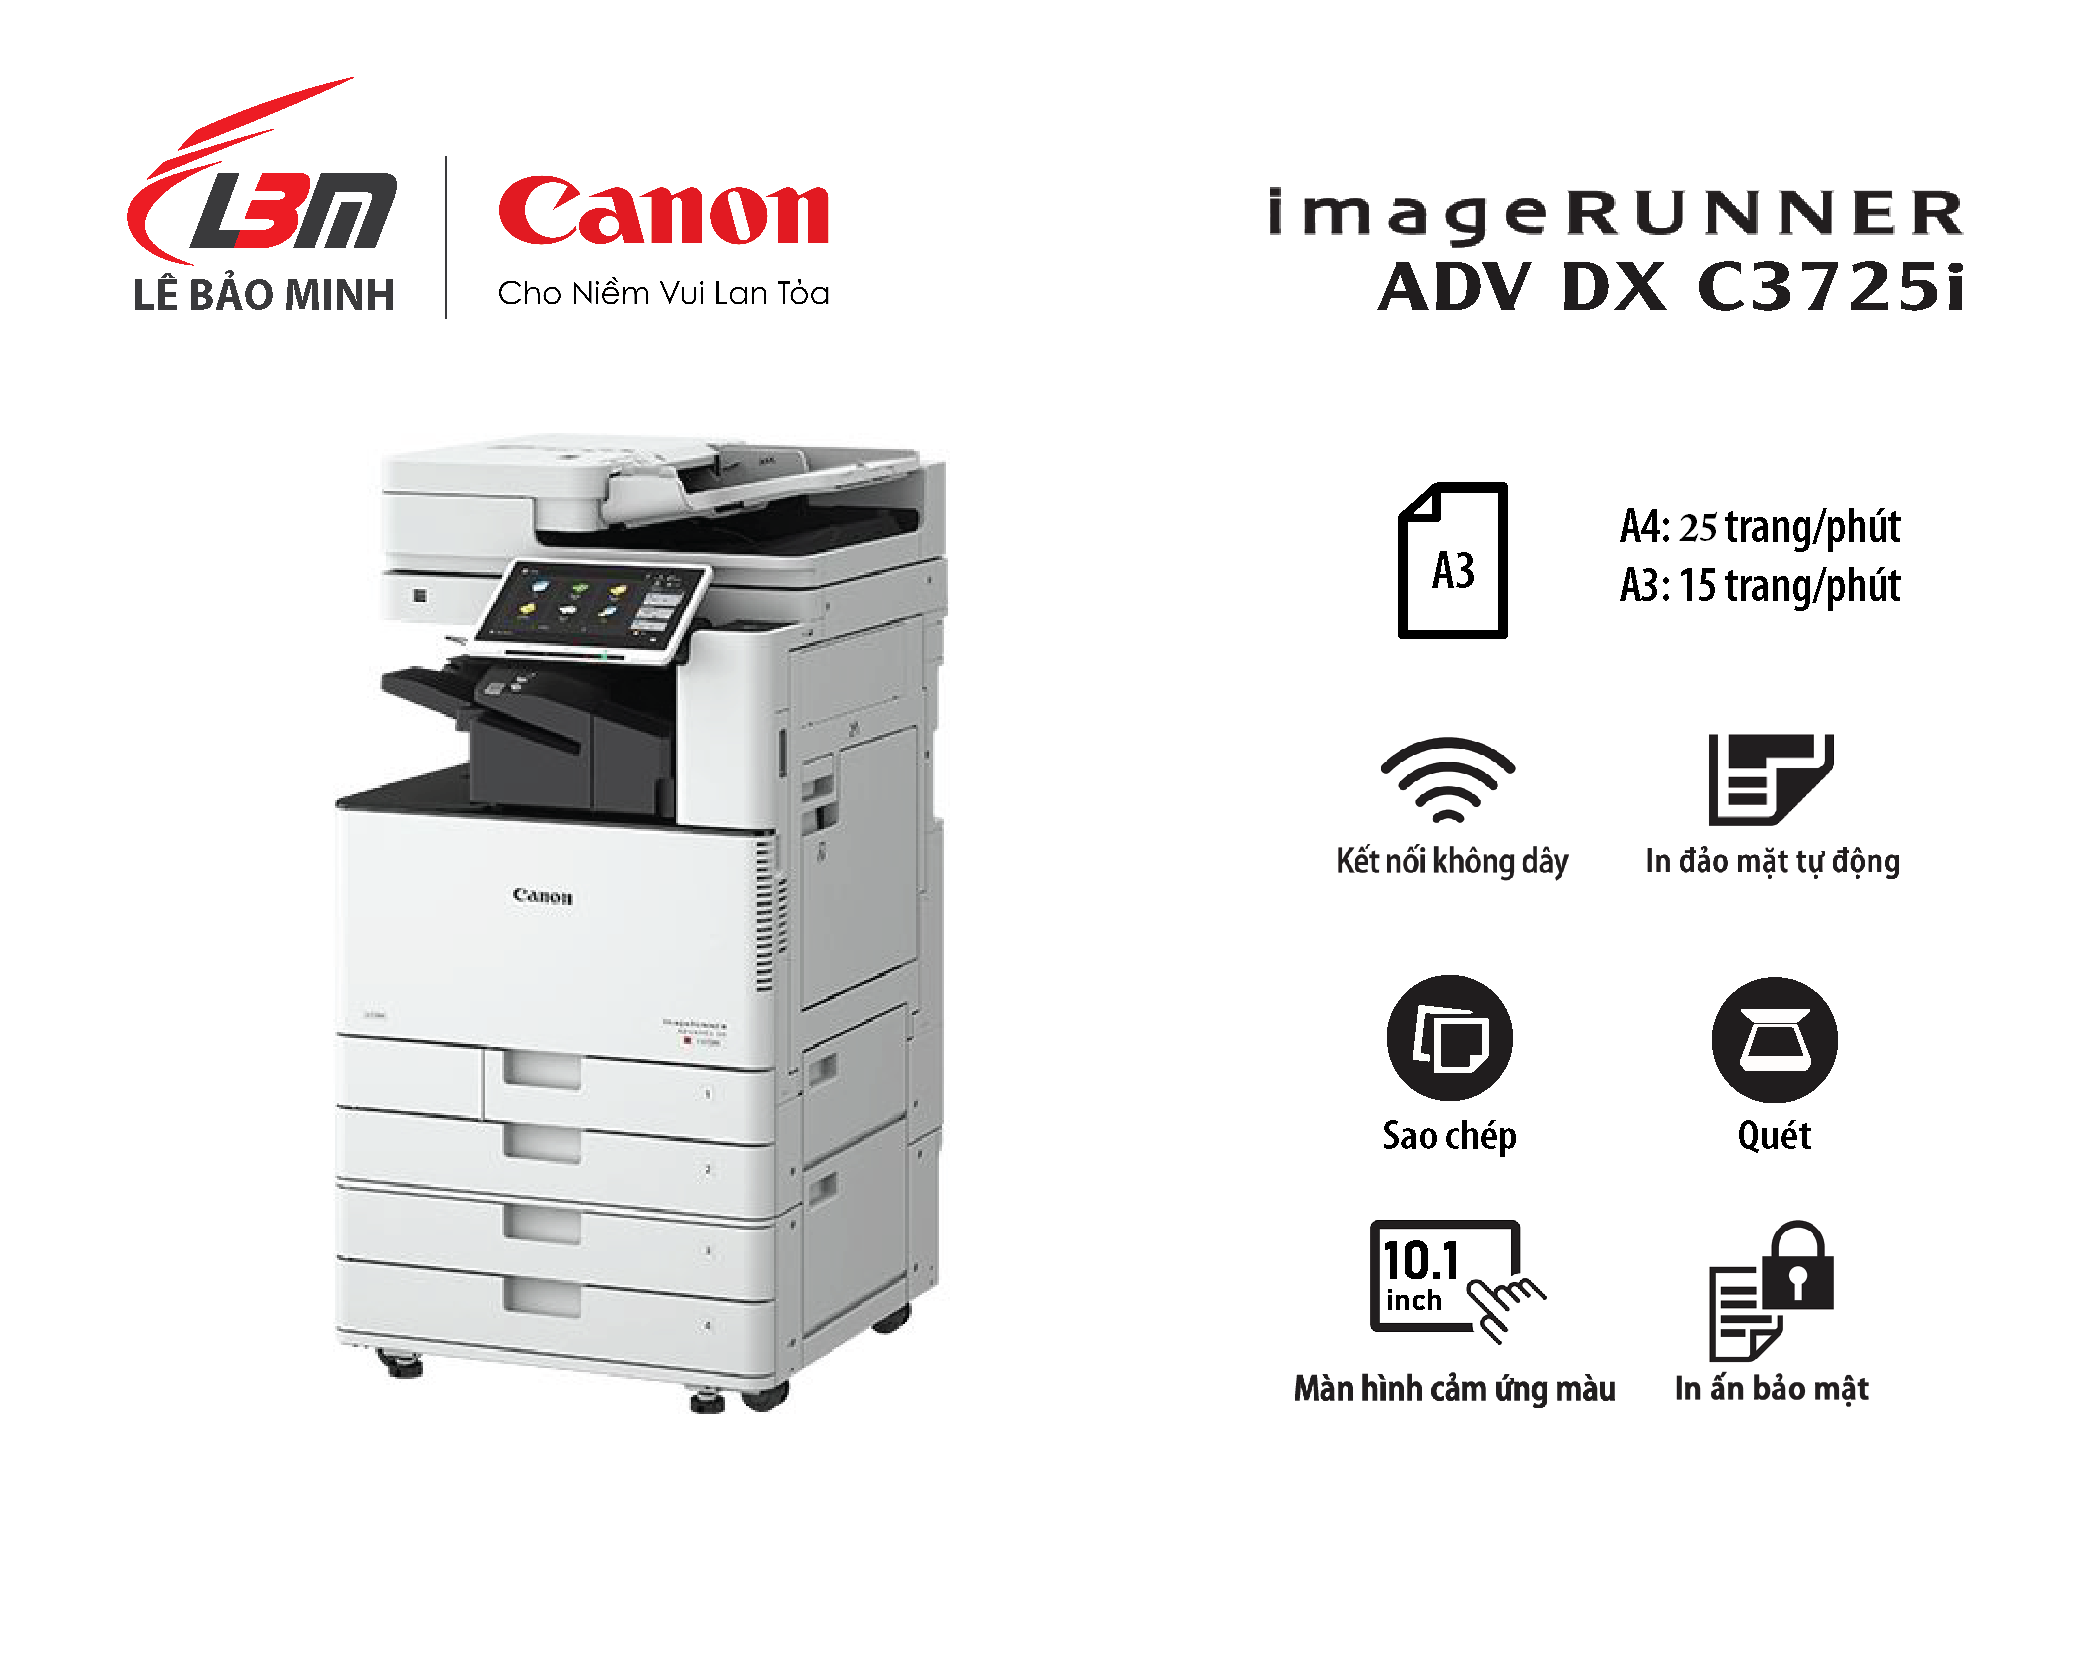 Photocopy iR-ADV DX C3725i